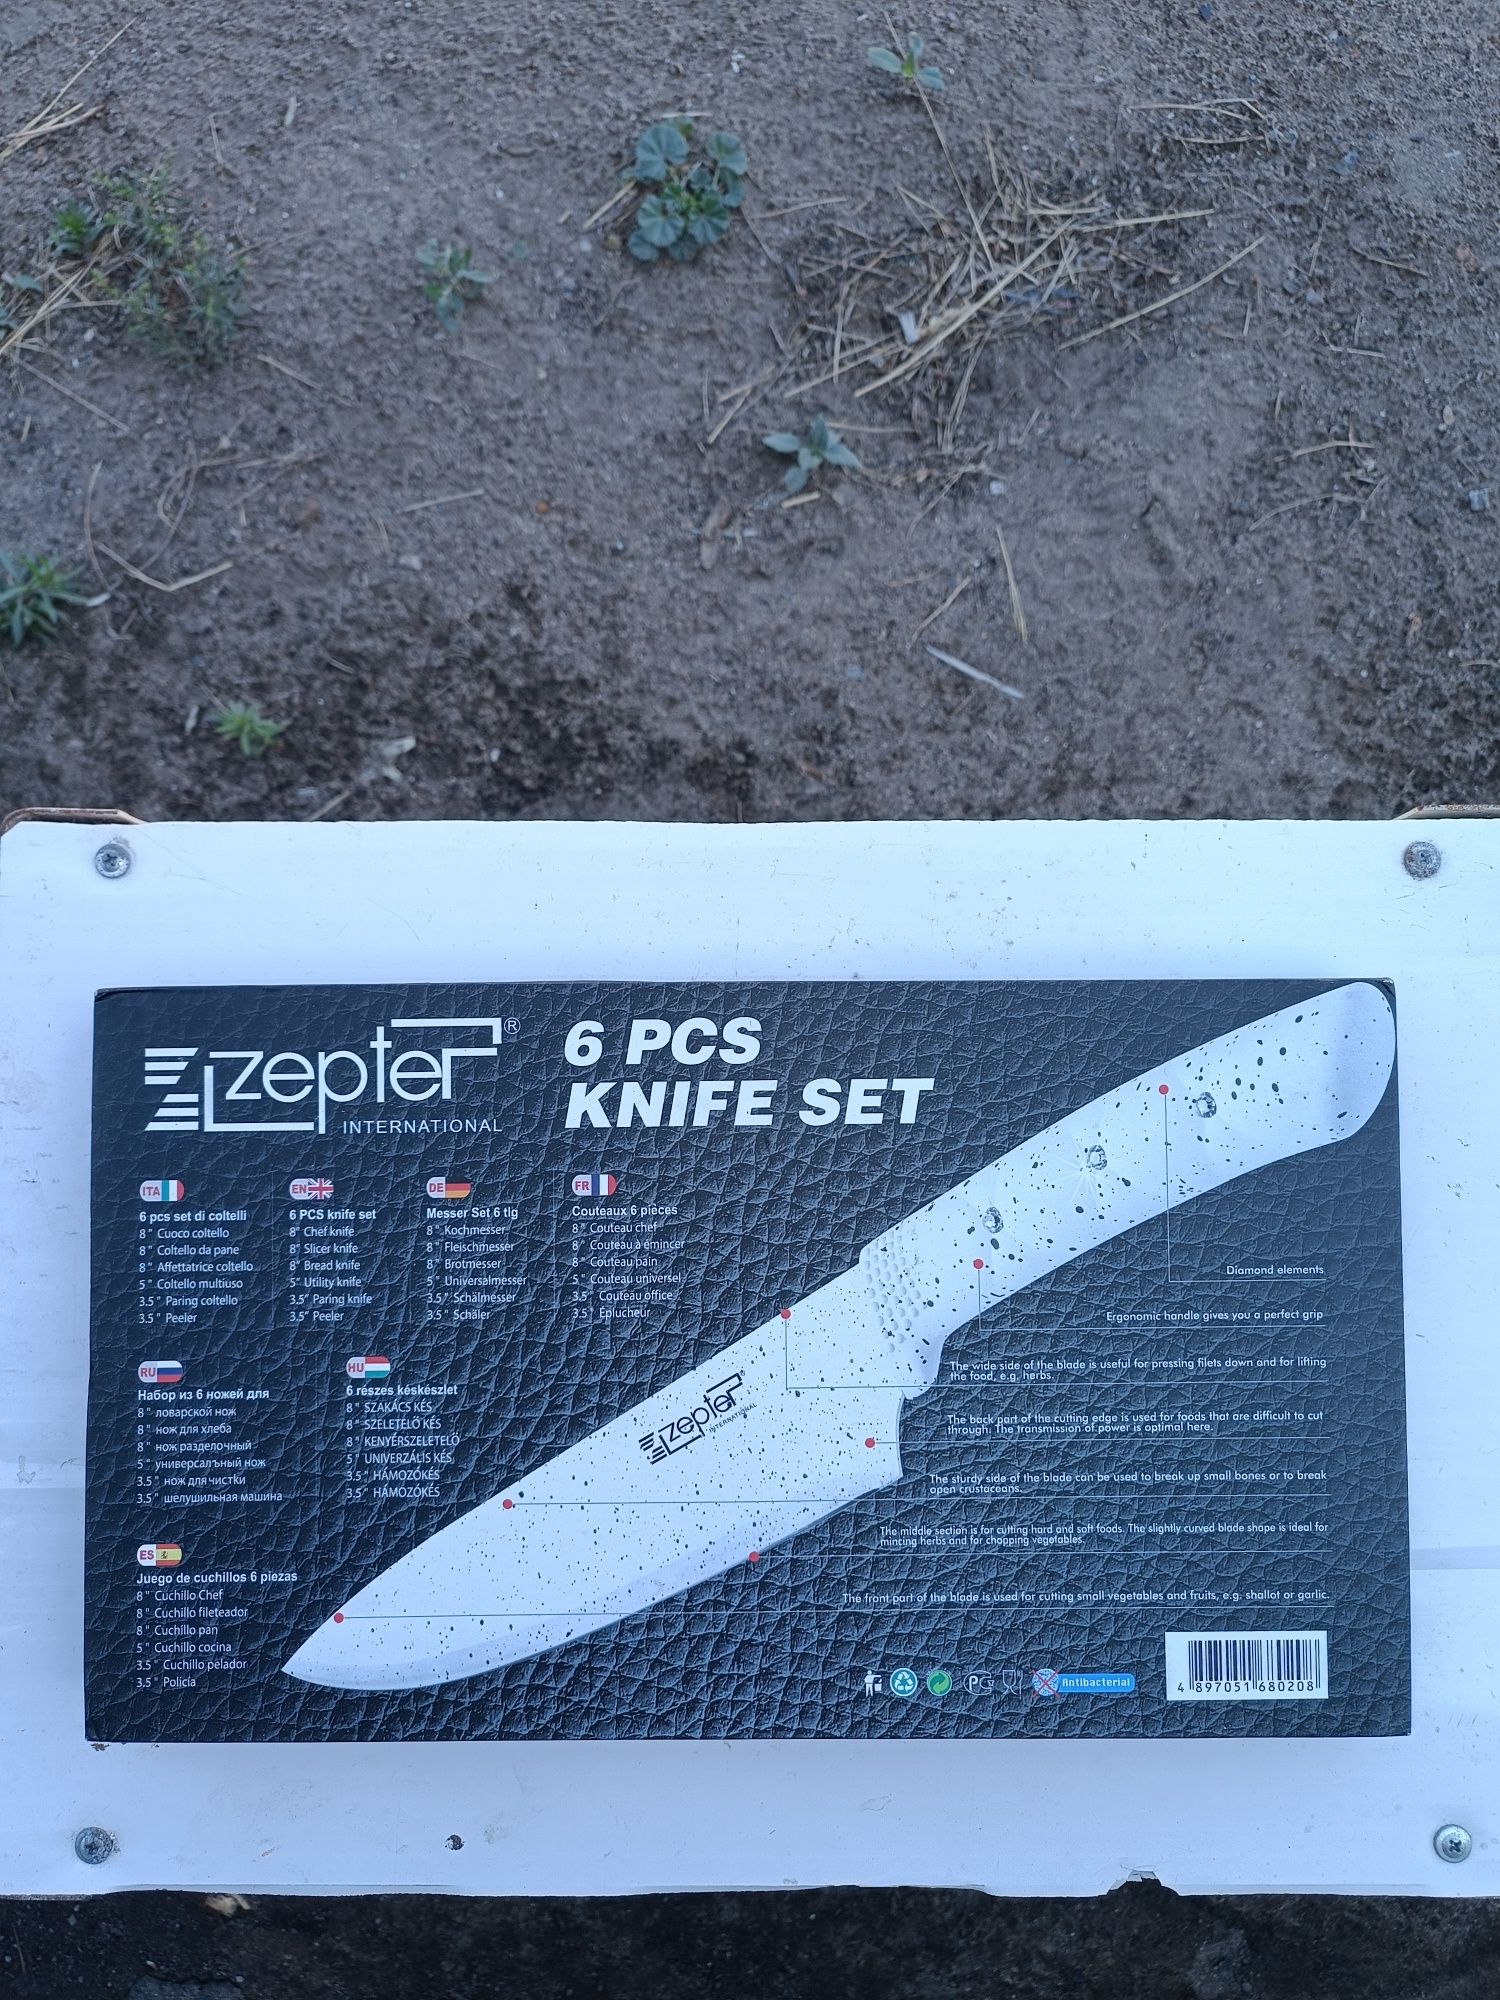 Новый набор ножей фирмы "Zepter"